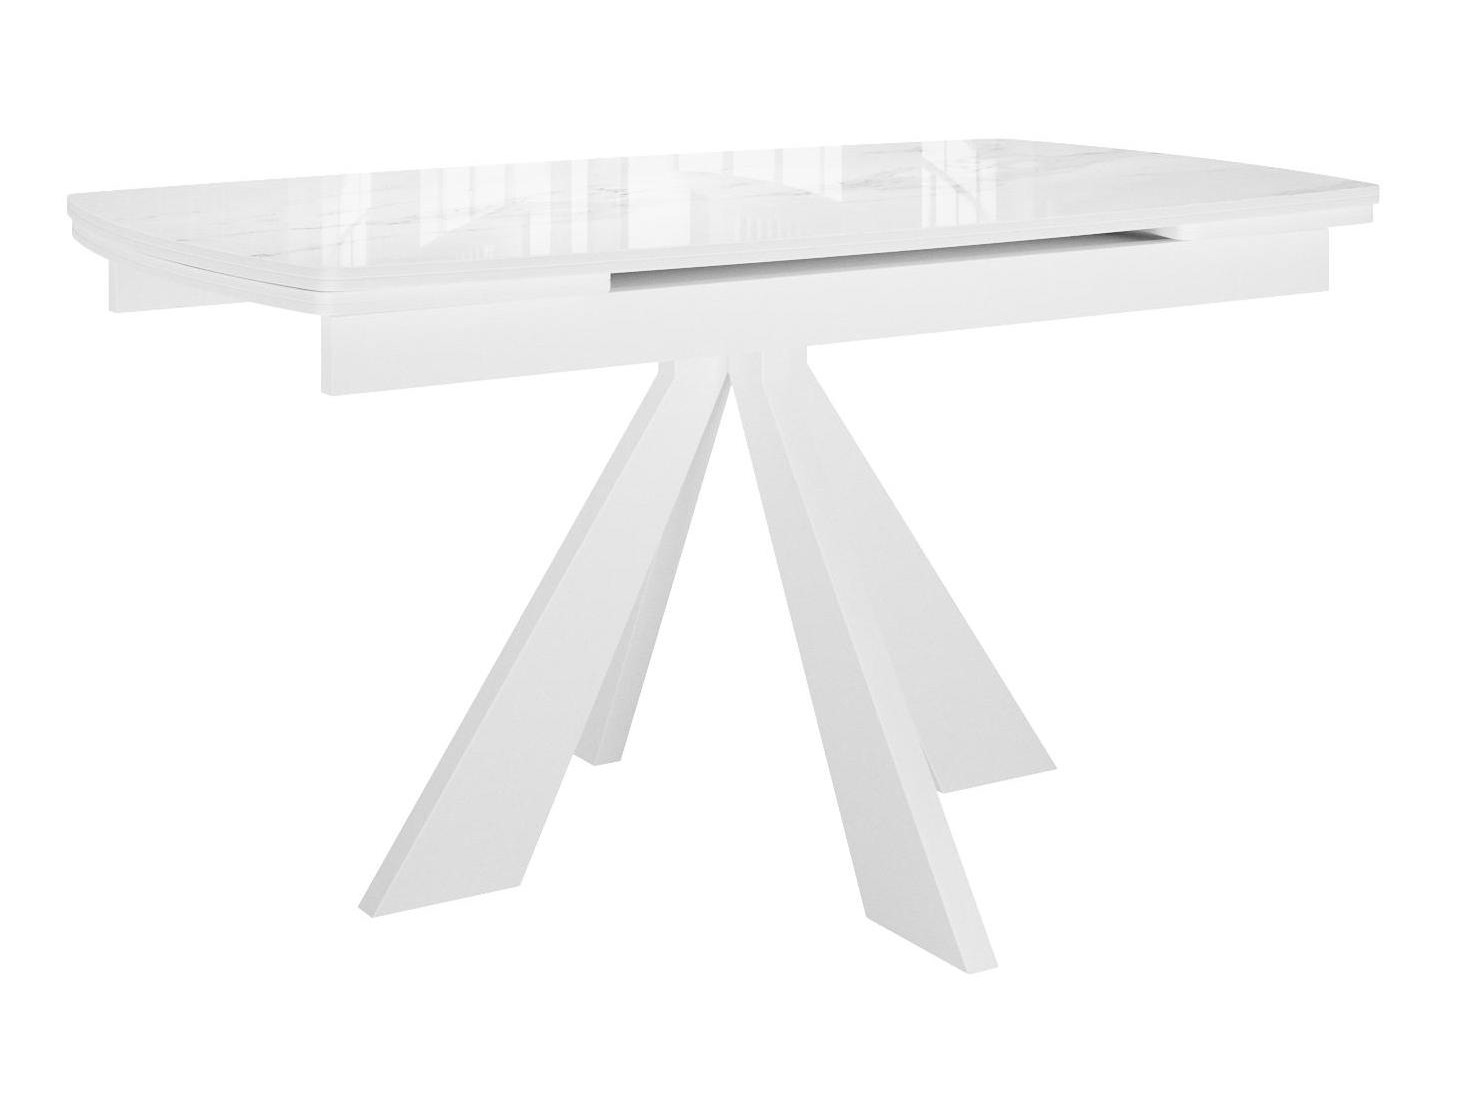 Стол DikLine SFU140 стекло белое мрамор глянец/подстолье белое/опоры белые (2 уп.) Белый, Стекло